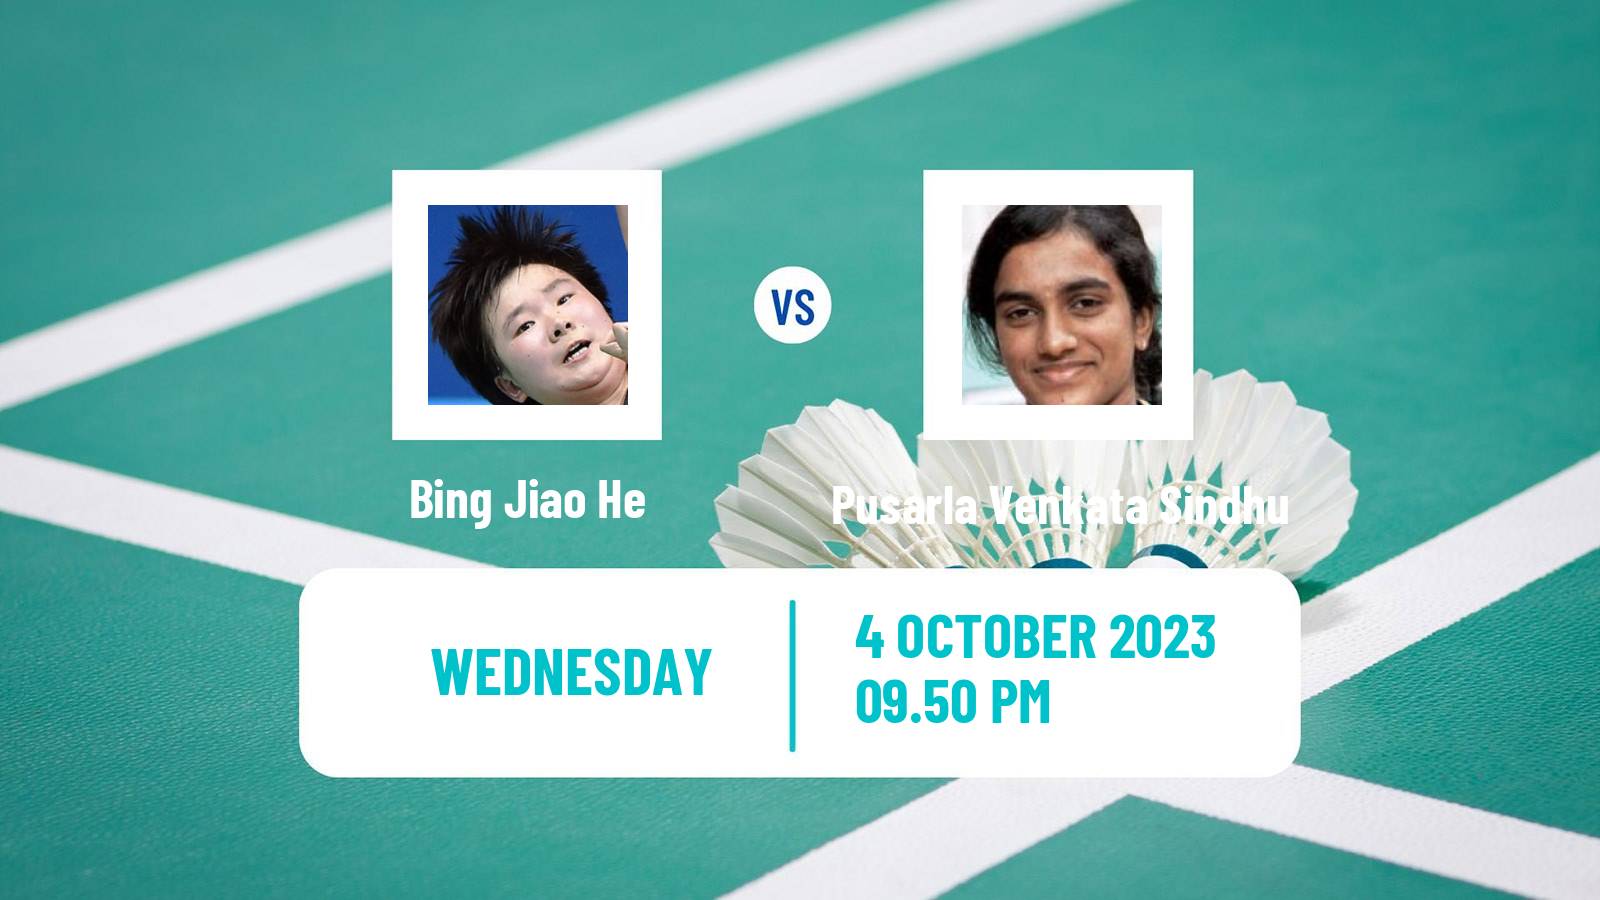 Badminton Asian Games Women Bing Jiao He - Pusarla Venkata Sindhu